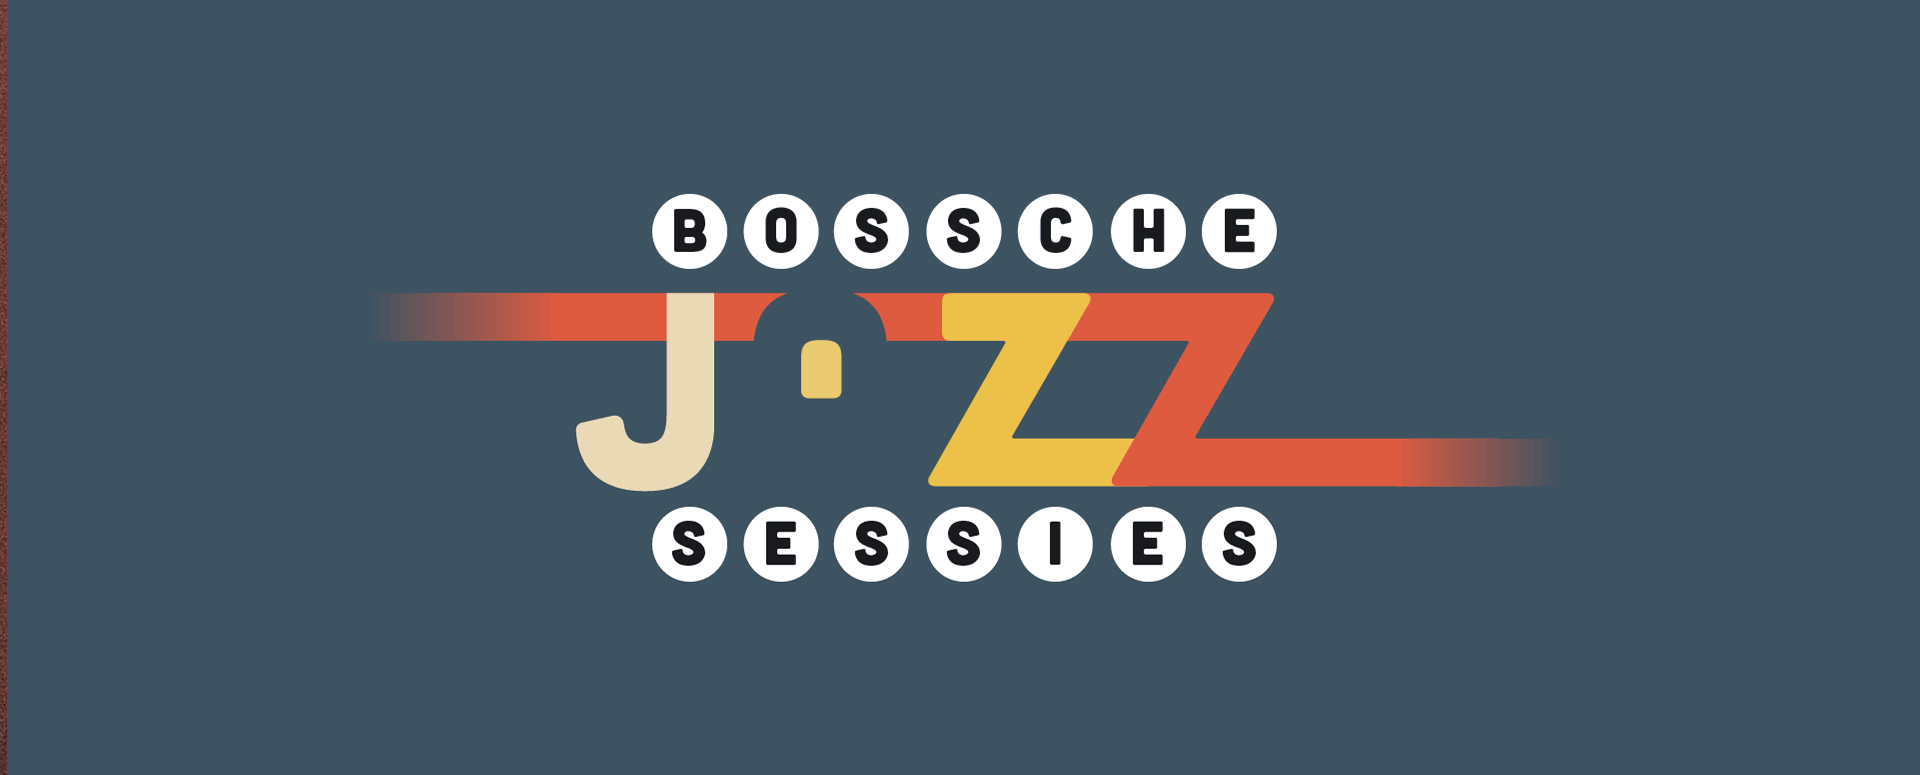 Bossche Jazzsessie